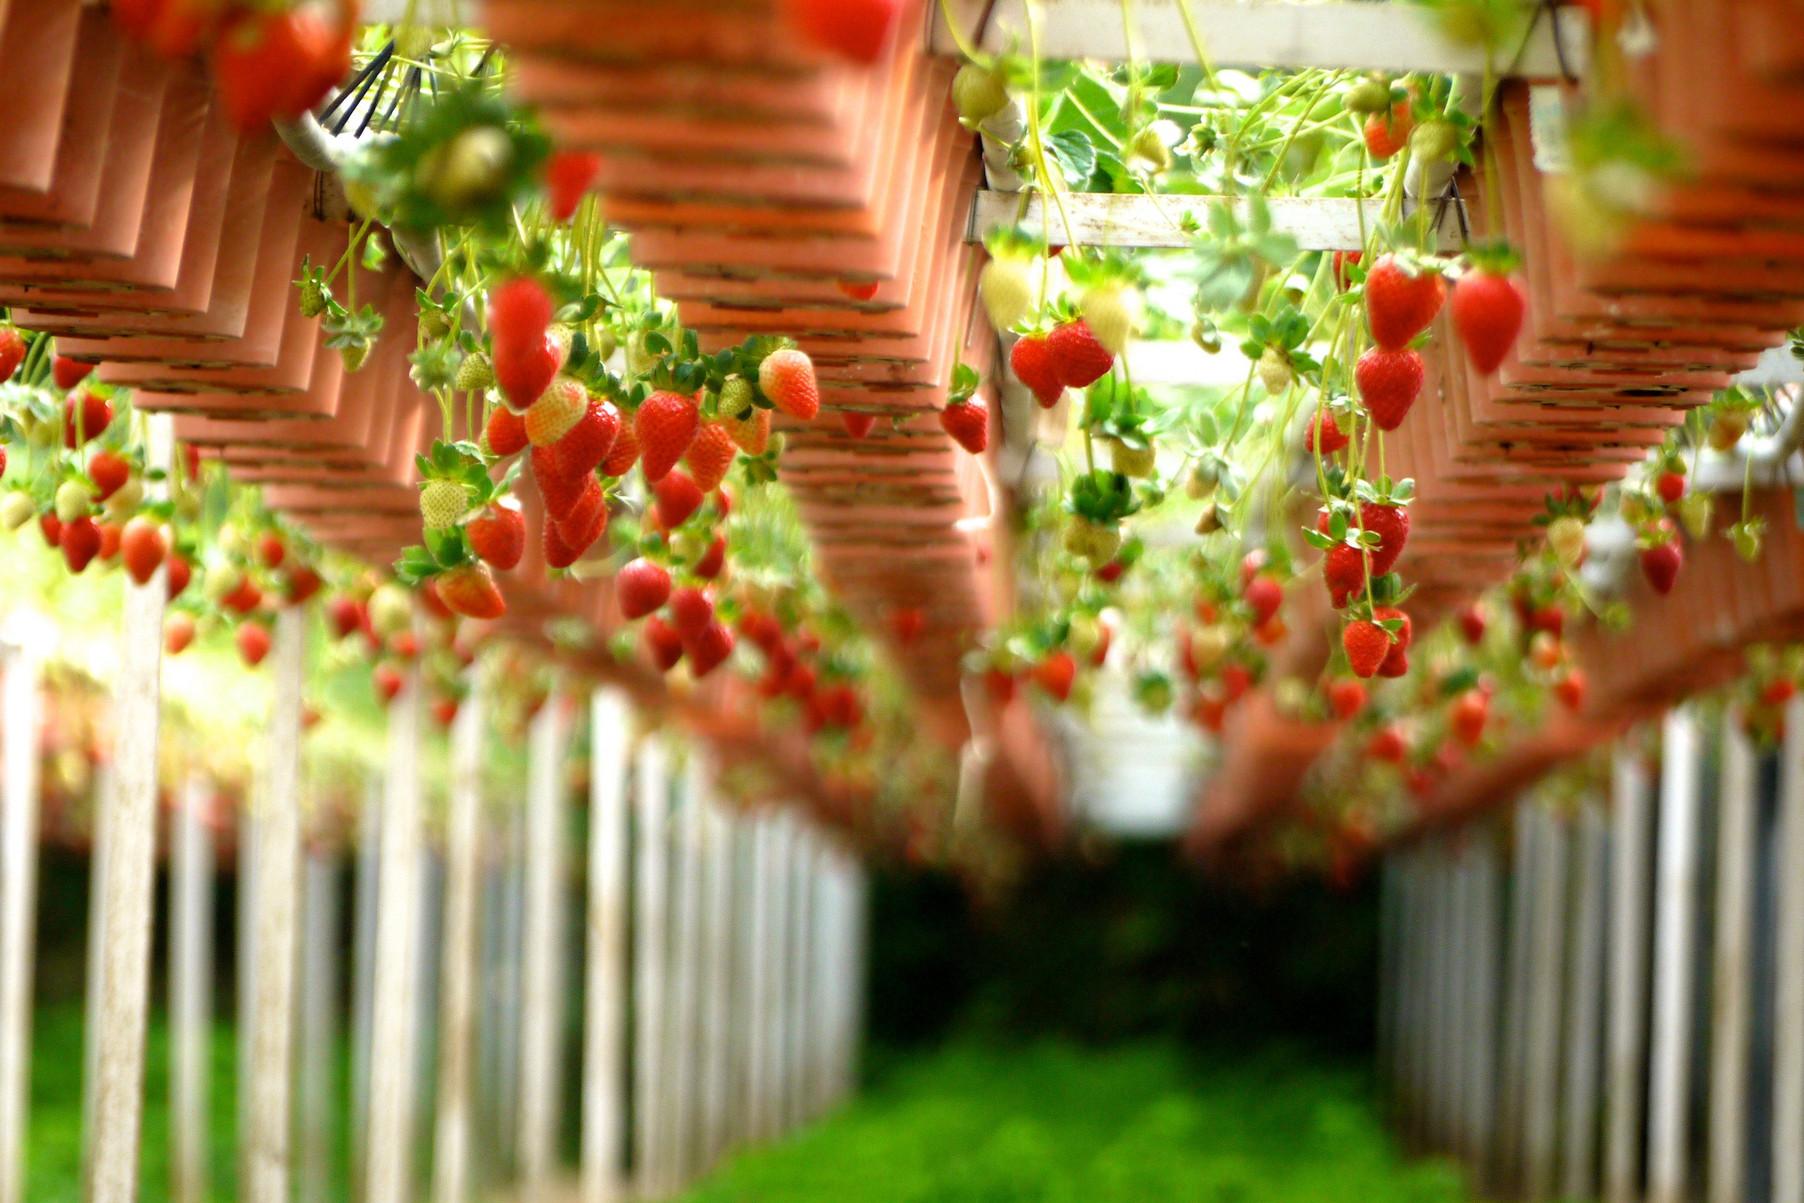 盆栽草莓怎么养殖（附浇水方法） - 花友之家